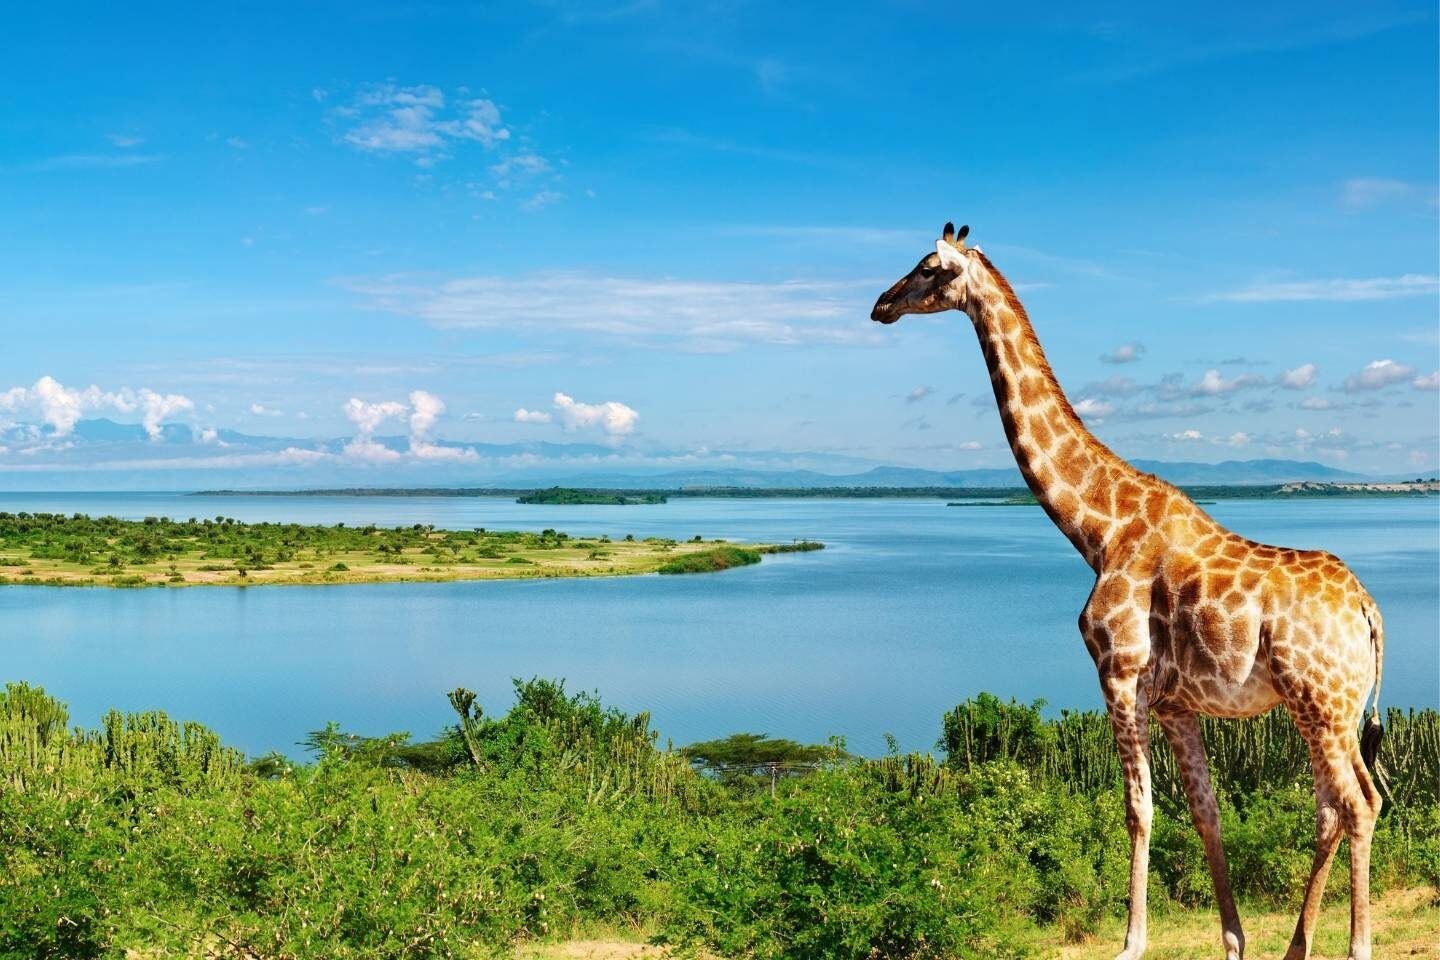 Giraffe in Nile River Uganda